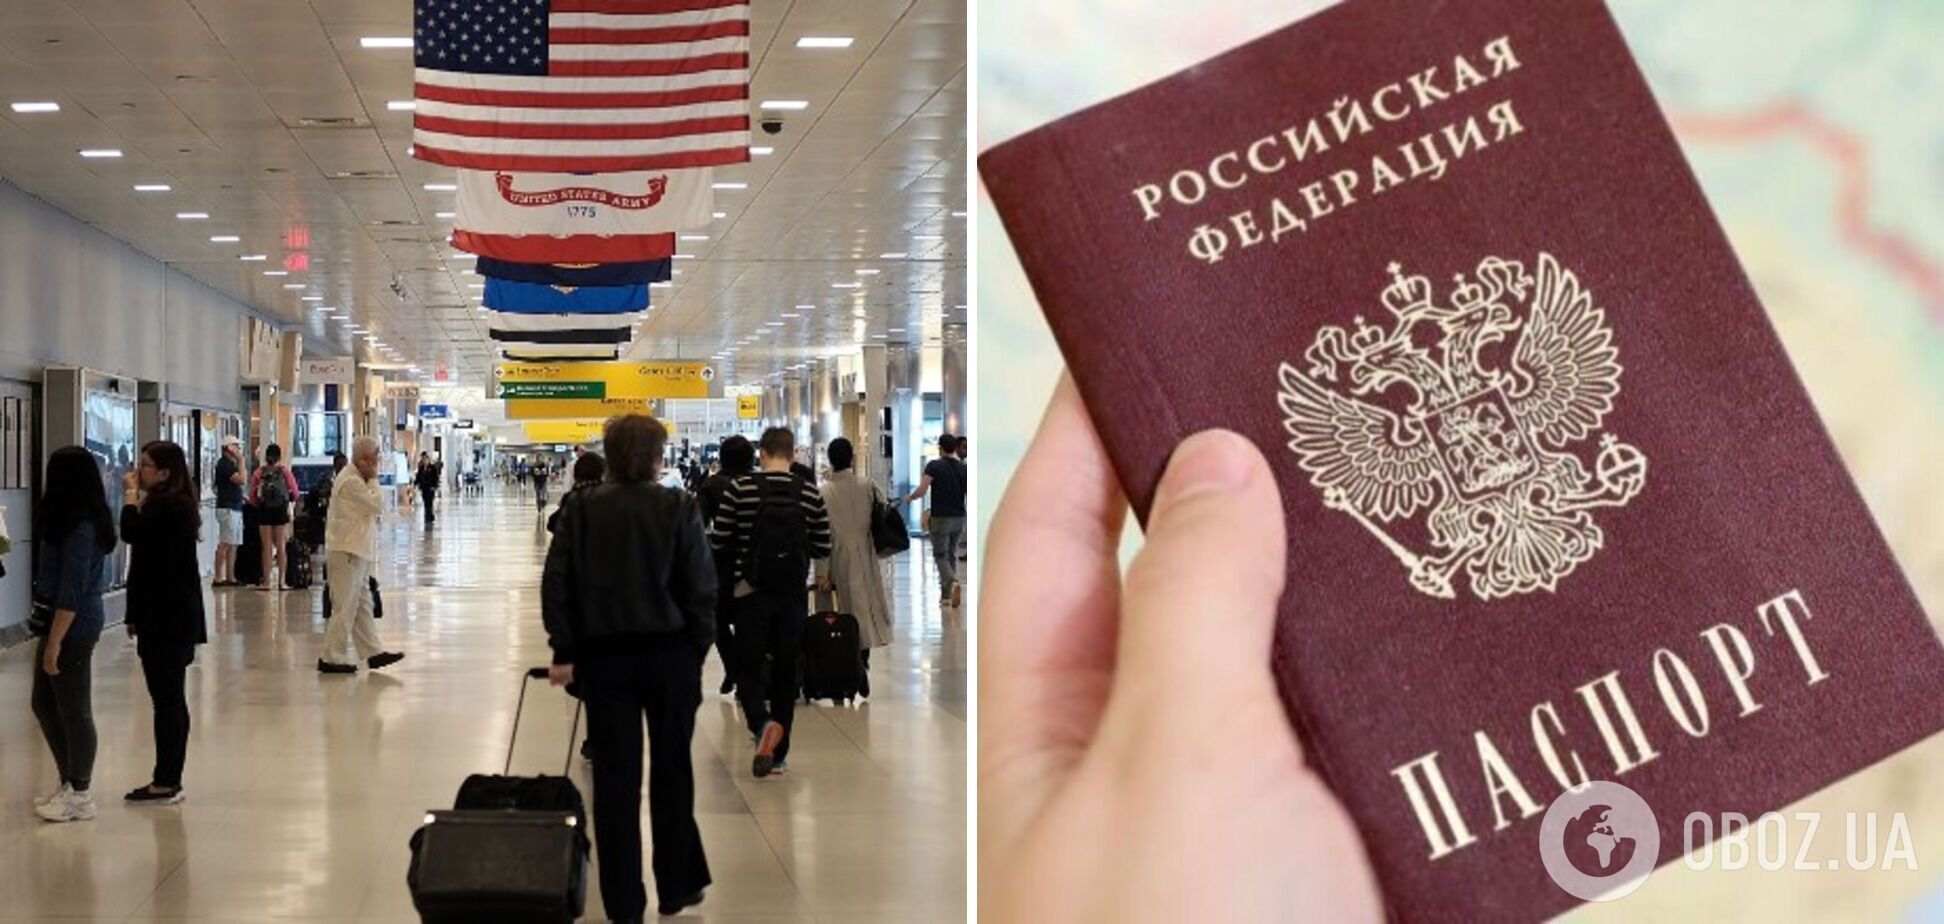 Заявил, что ничего не помнит: россиянин прилетел в США без документов и авиабилета